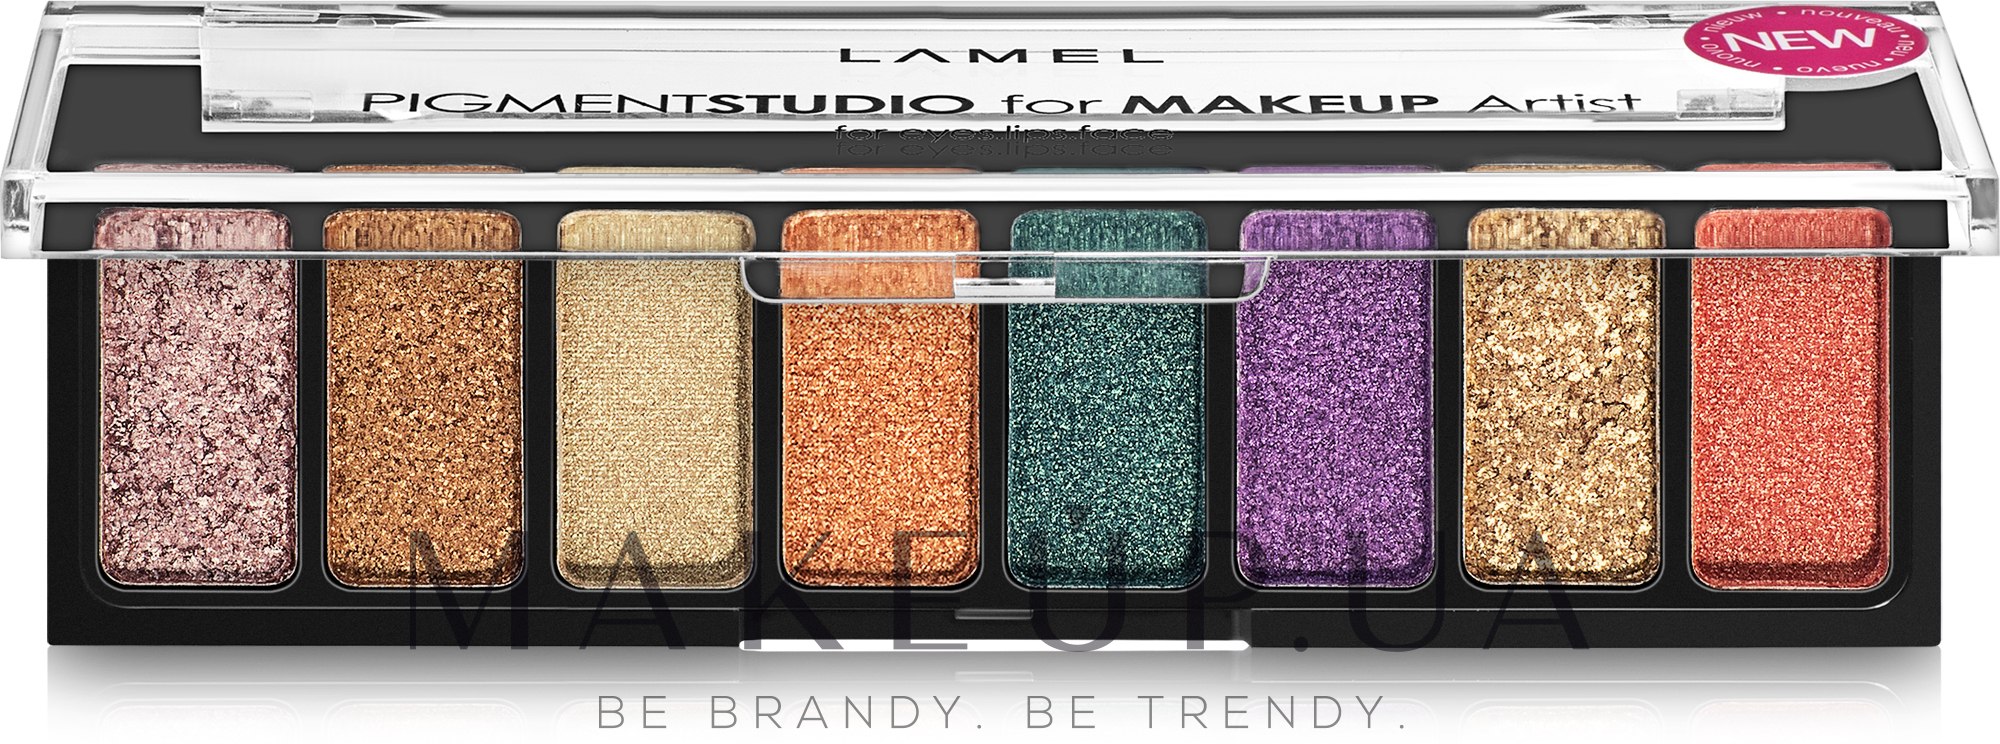 Пигменты для макияжа - LAMEL Make Up Pigment Studio For Makeup Artist — фото 7g